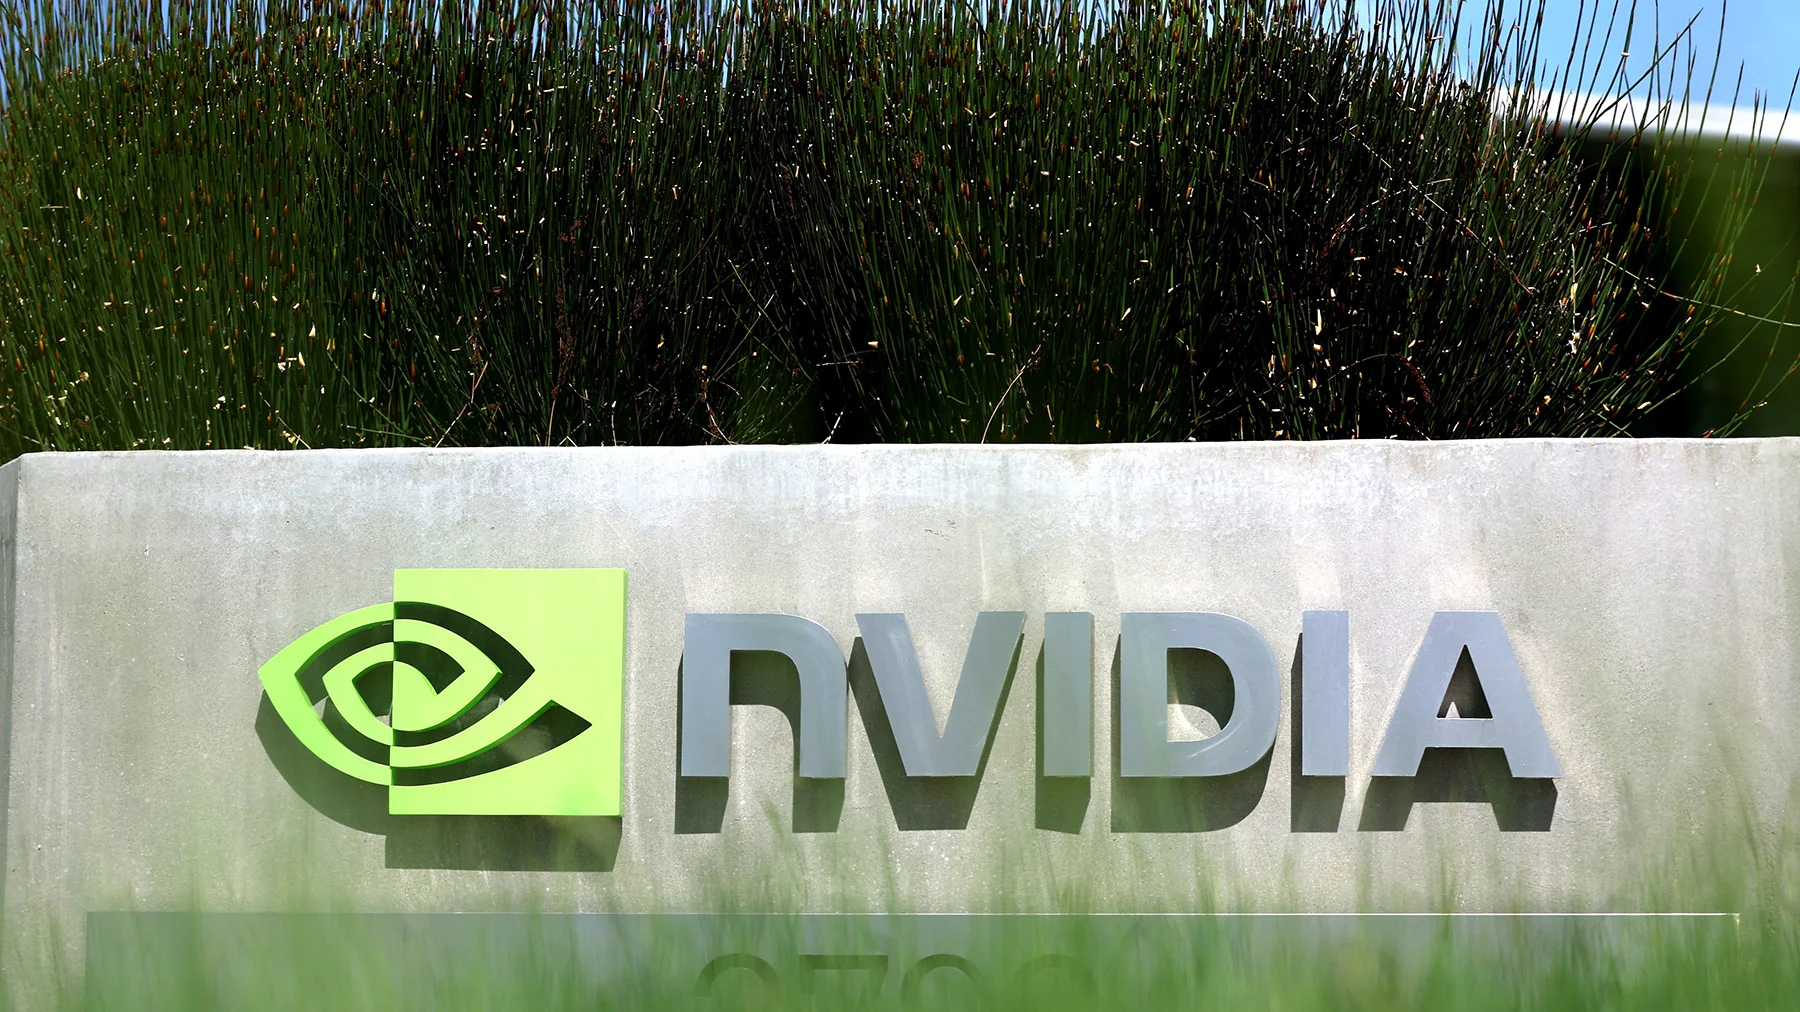 NVIDIA ha cerrado su oficina en Rusia y rescinde el acuerdo con los empleados que se niegan a abandonar el país